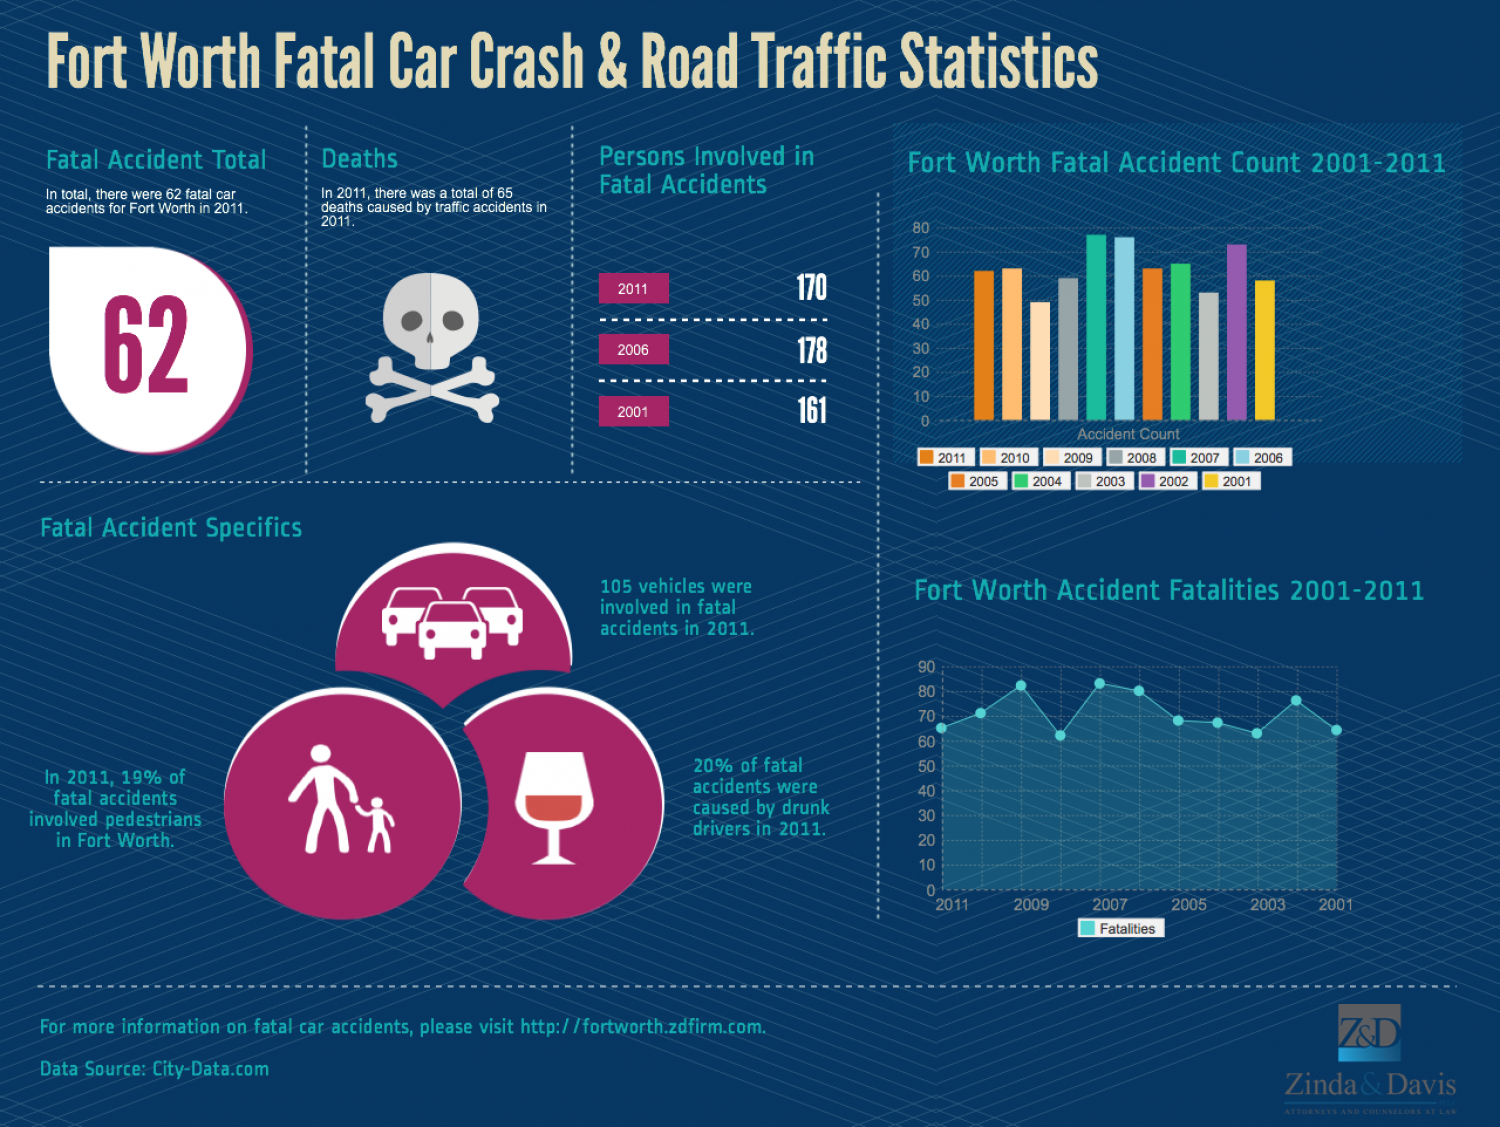 Car Crash Statistics